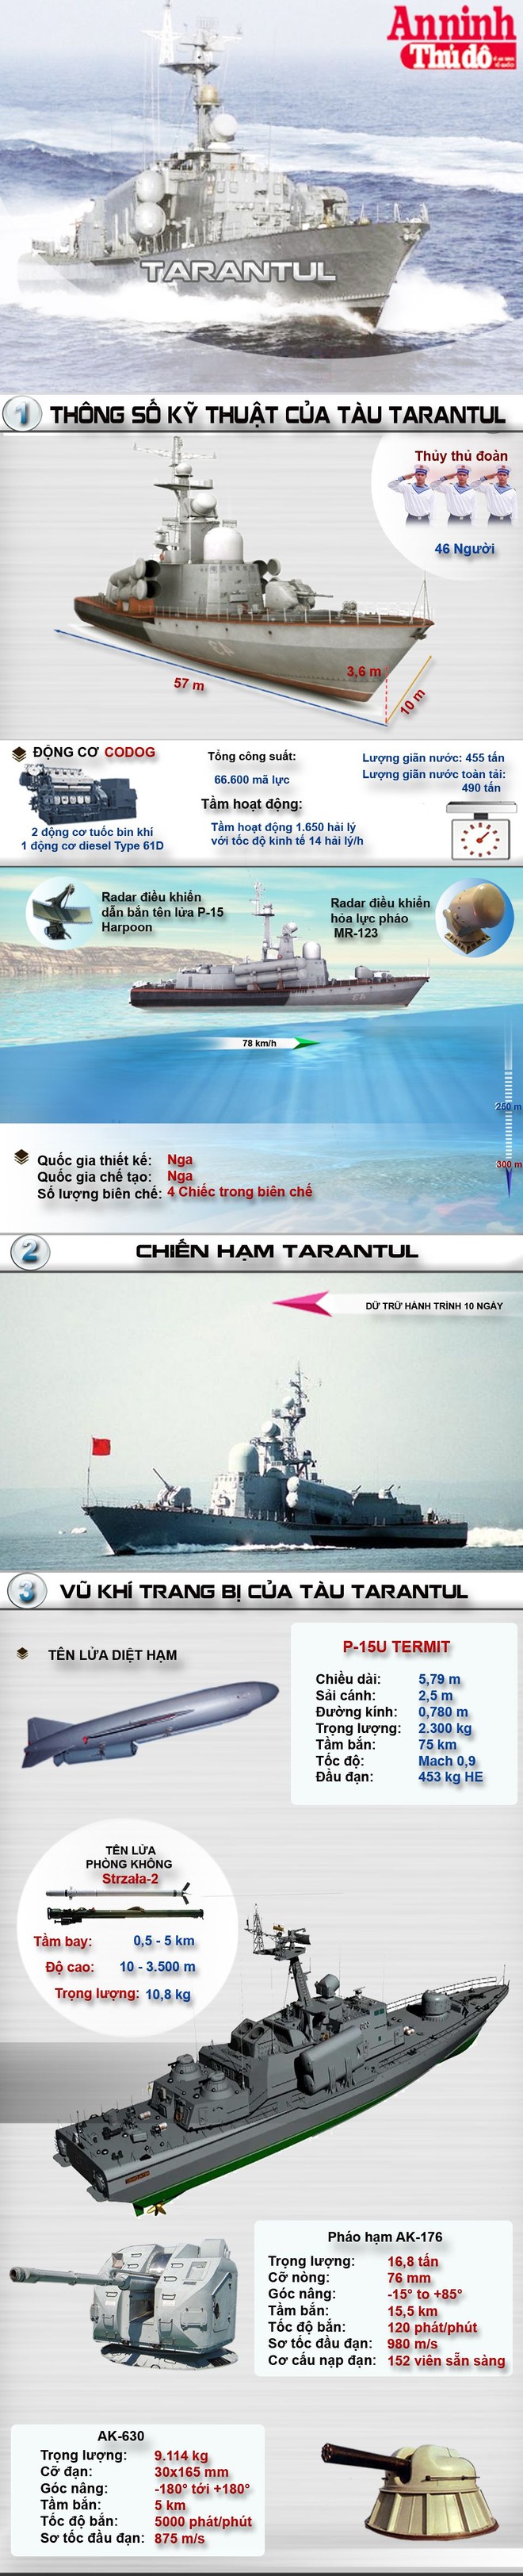 [Infographic] Tarantul- Sức mạnh kiếm sĩ canh biển Việt Nam ảnh 1